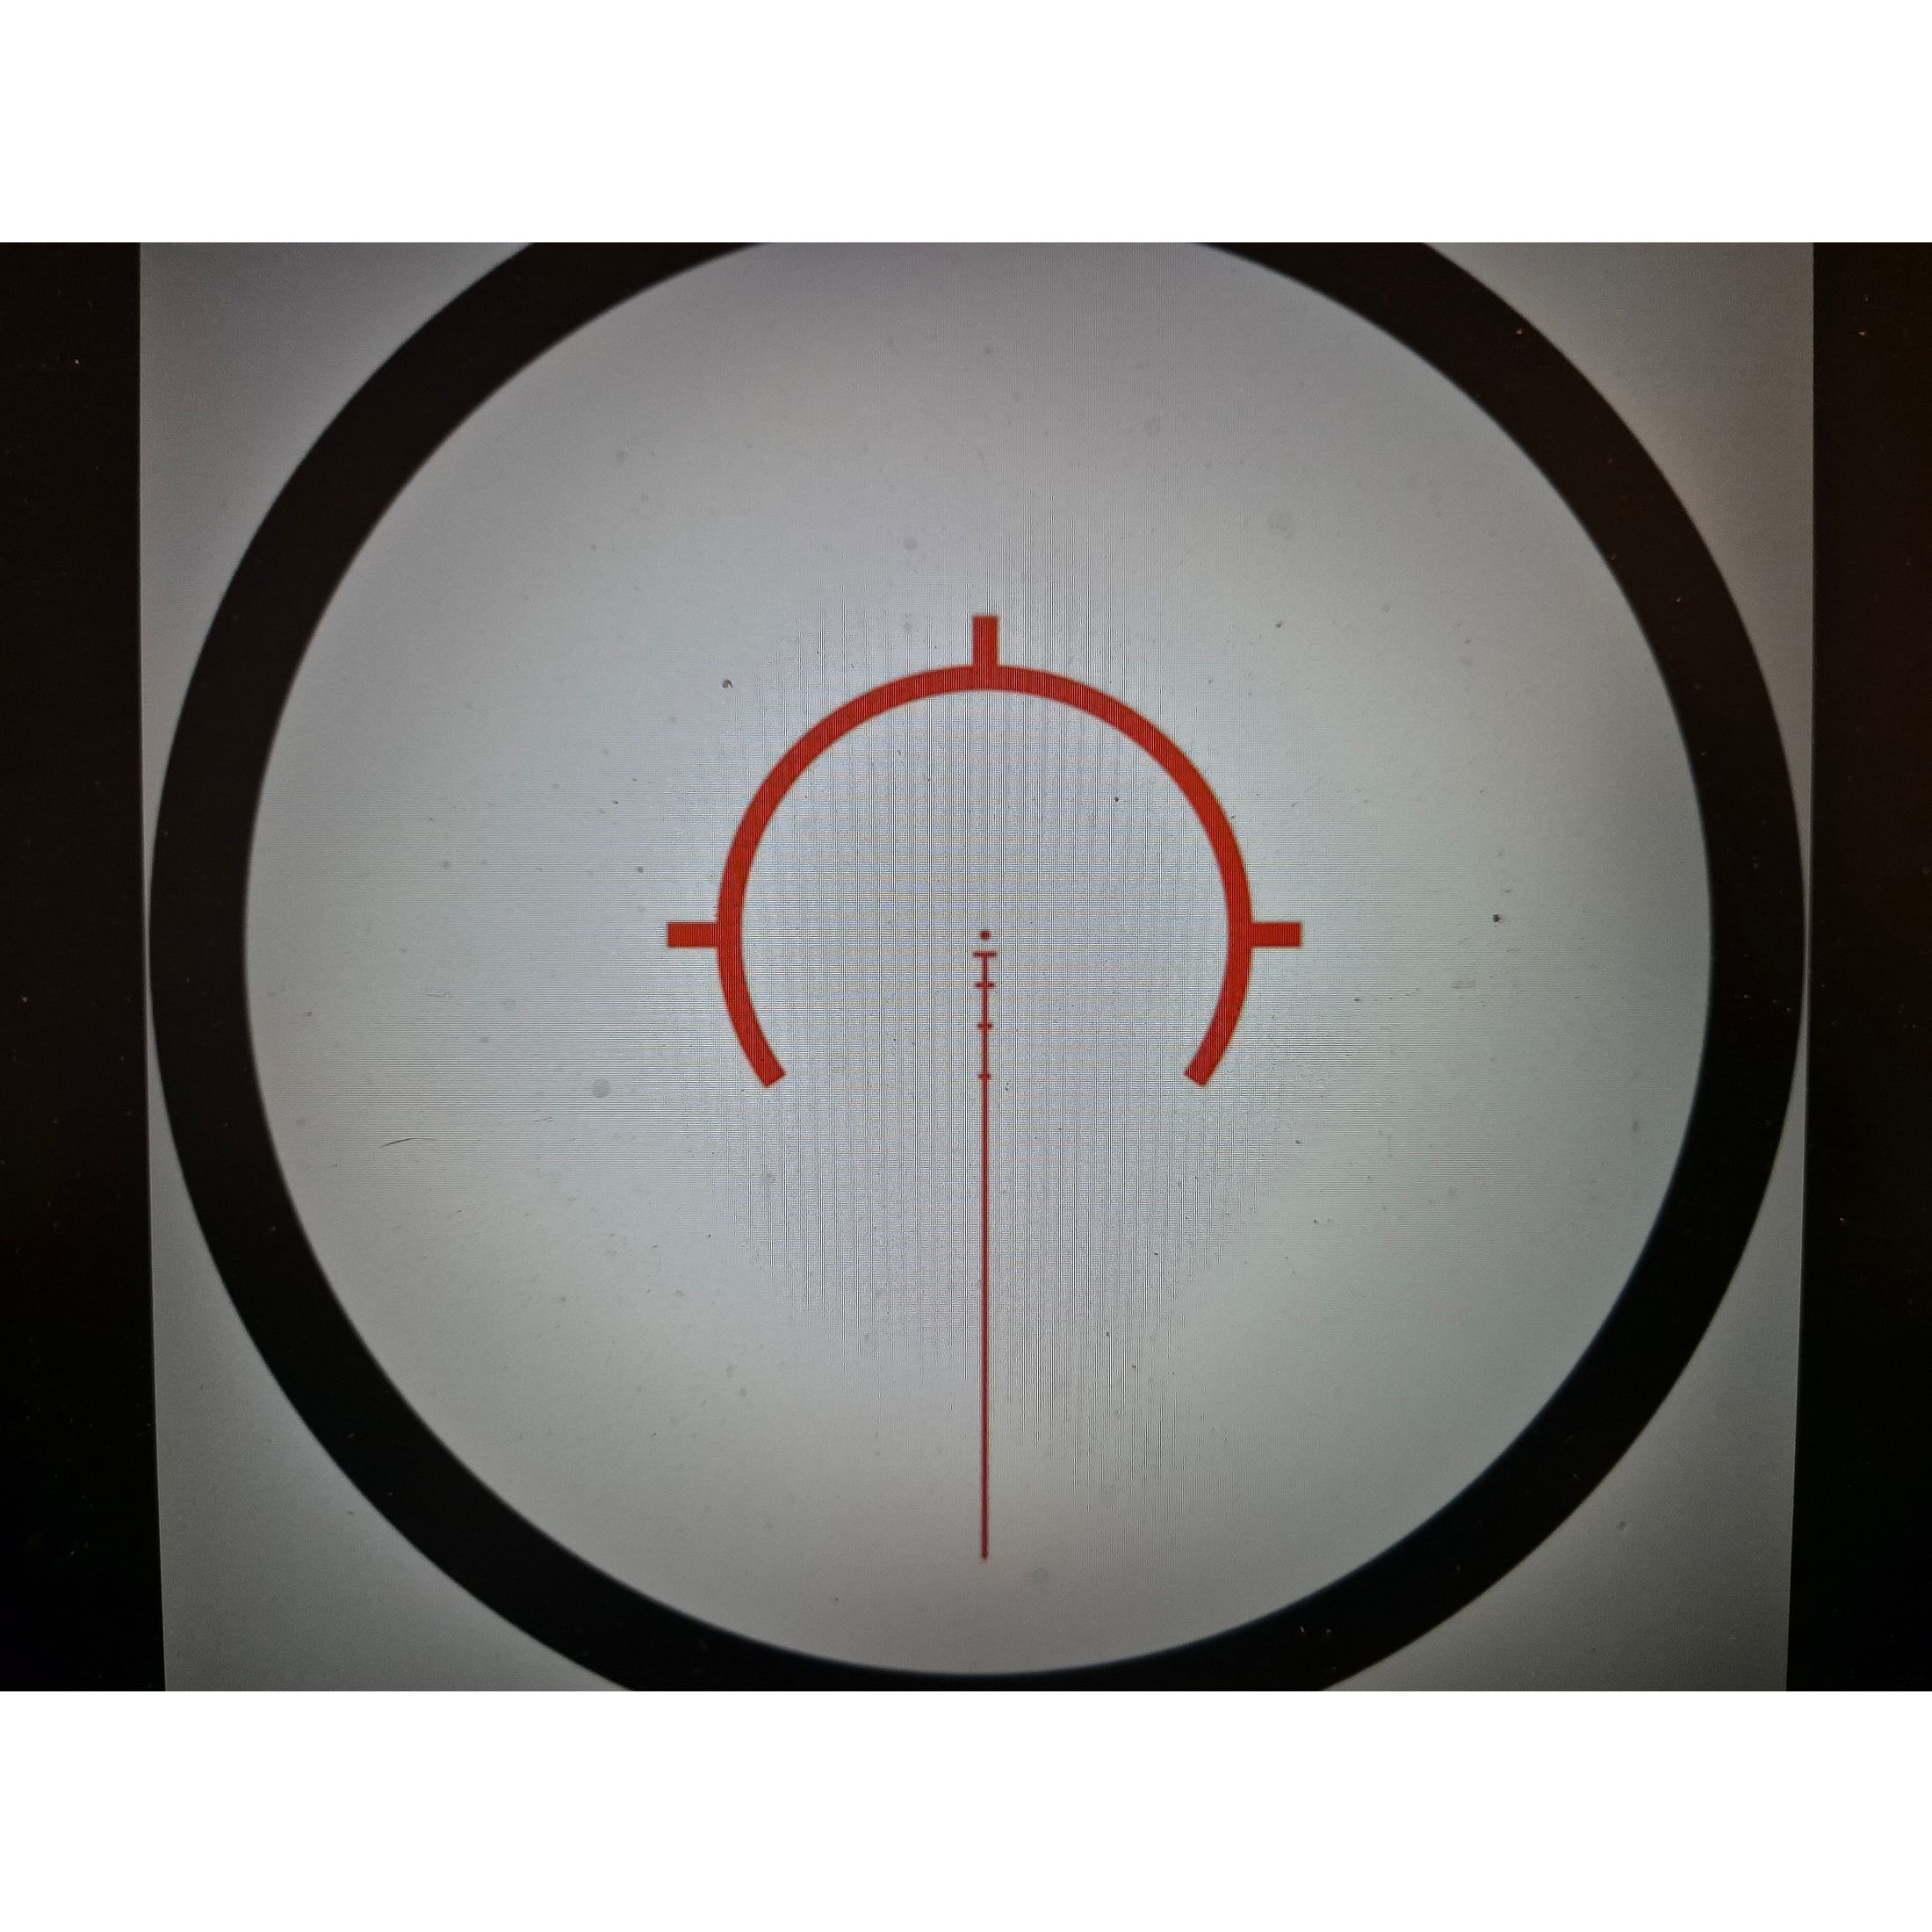 Original Truglo Prisma pr3 3x32mm Jagd taktisches Gewehr Fernrohr beleuchtet 6 moa  absehen rot punkt visier